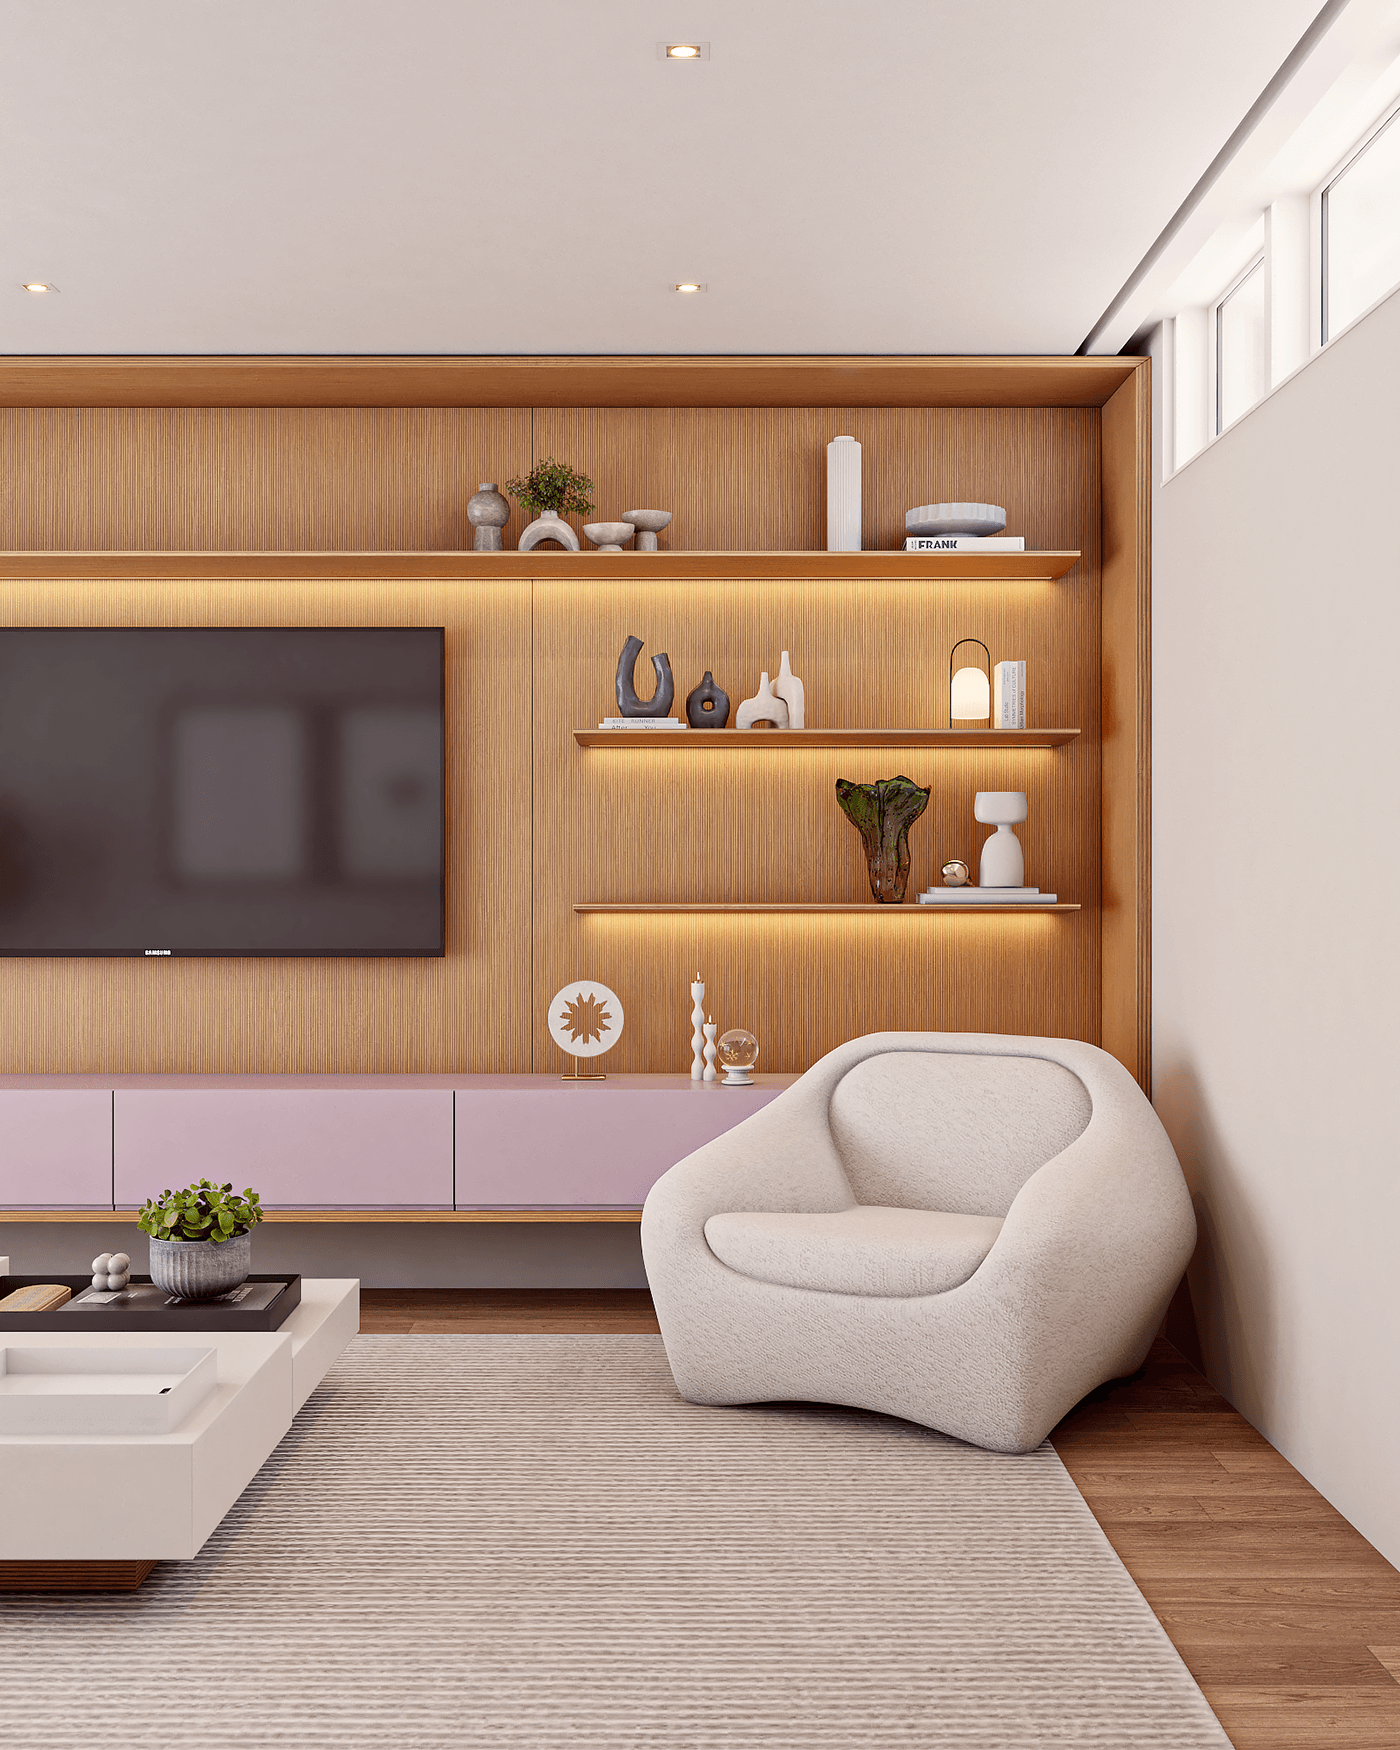 living room living room design livingroomdesign livingroom interior design  Render vray 3ds max corona archviz